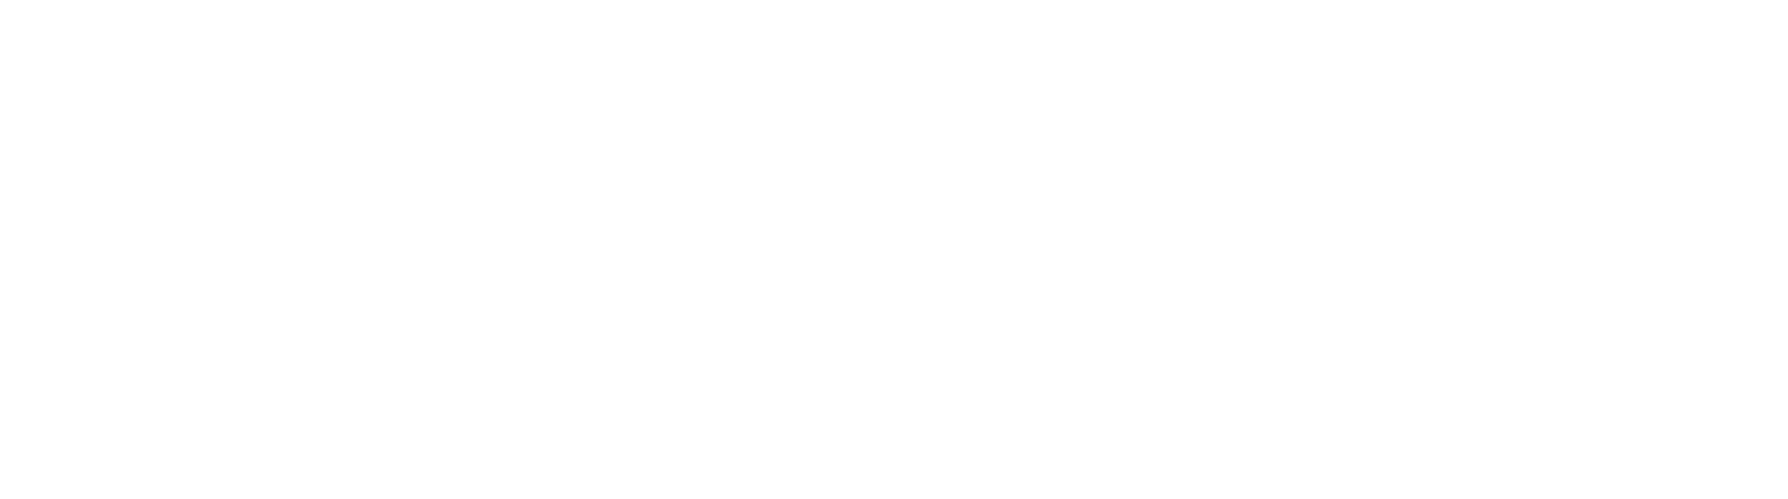 logo-vmware-blanco